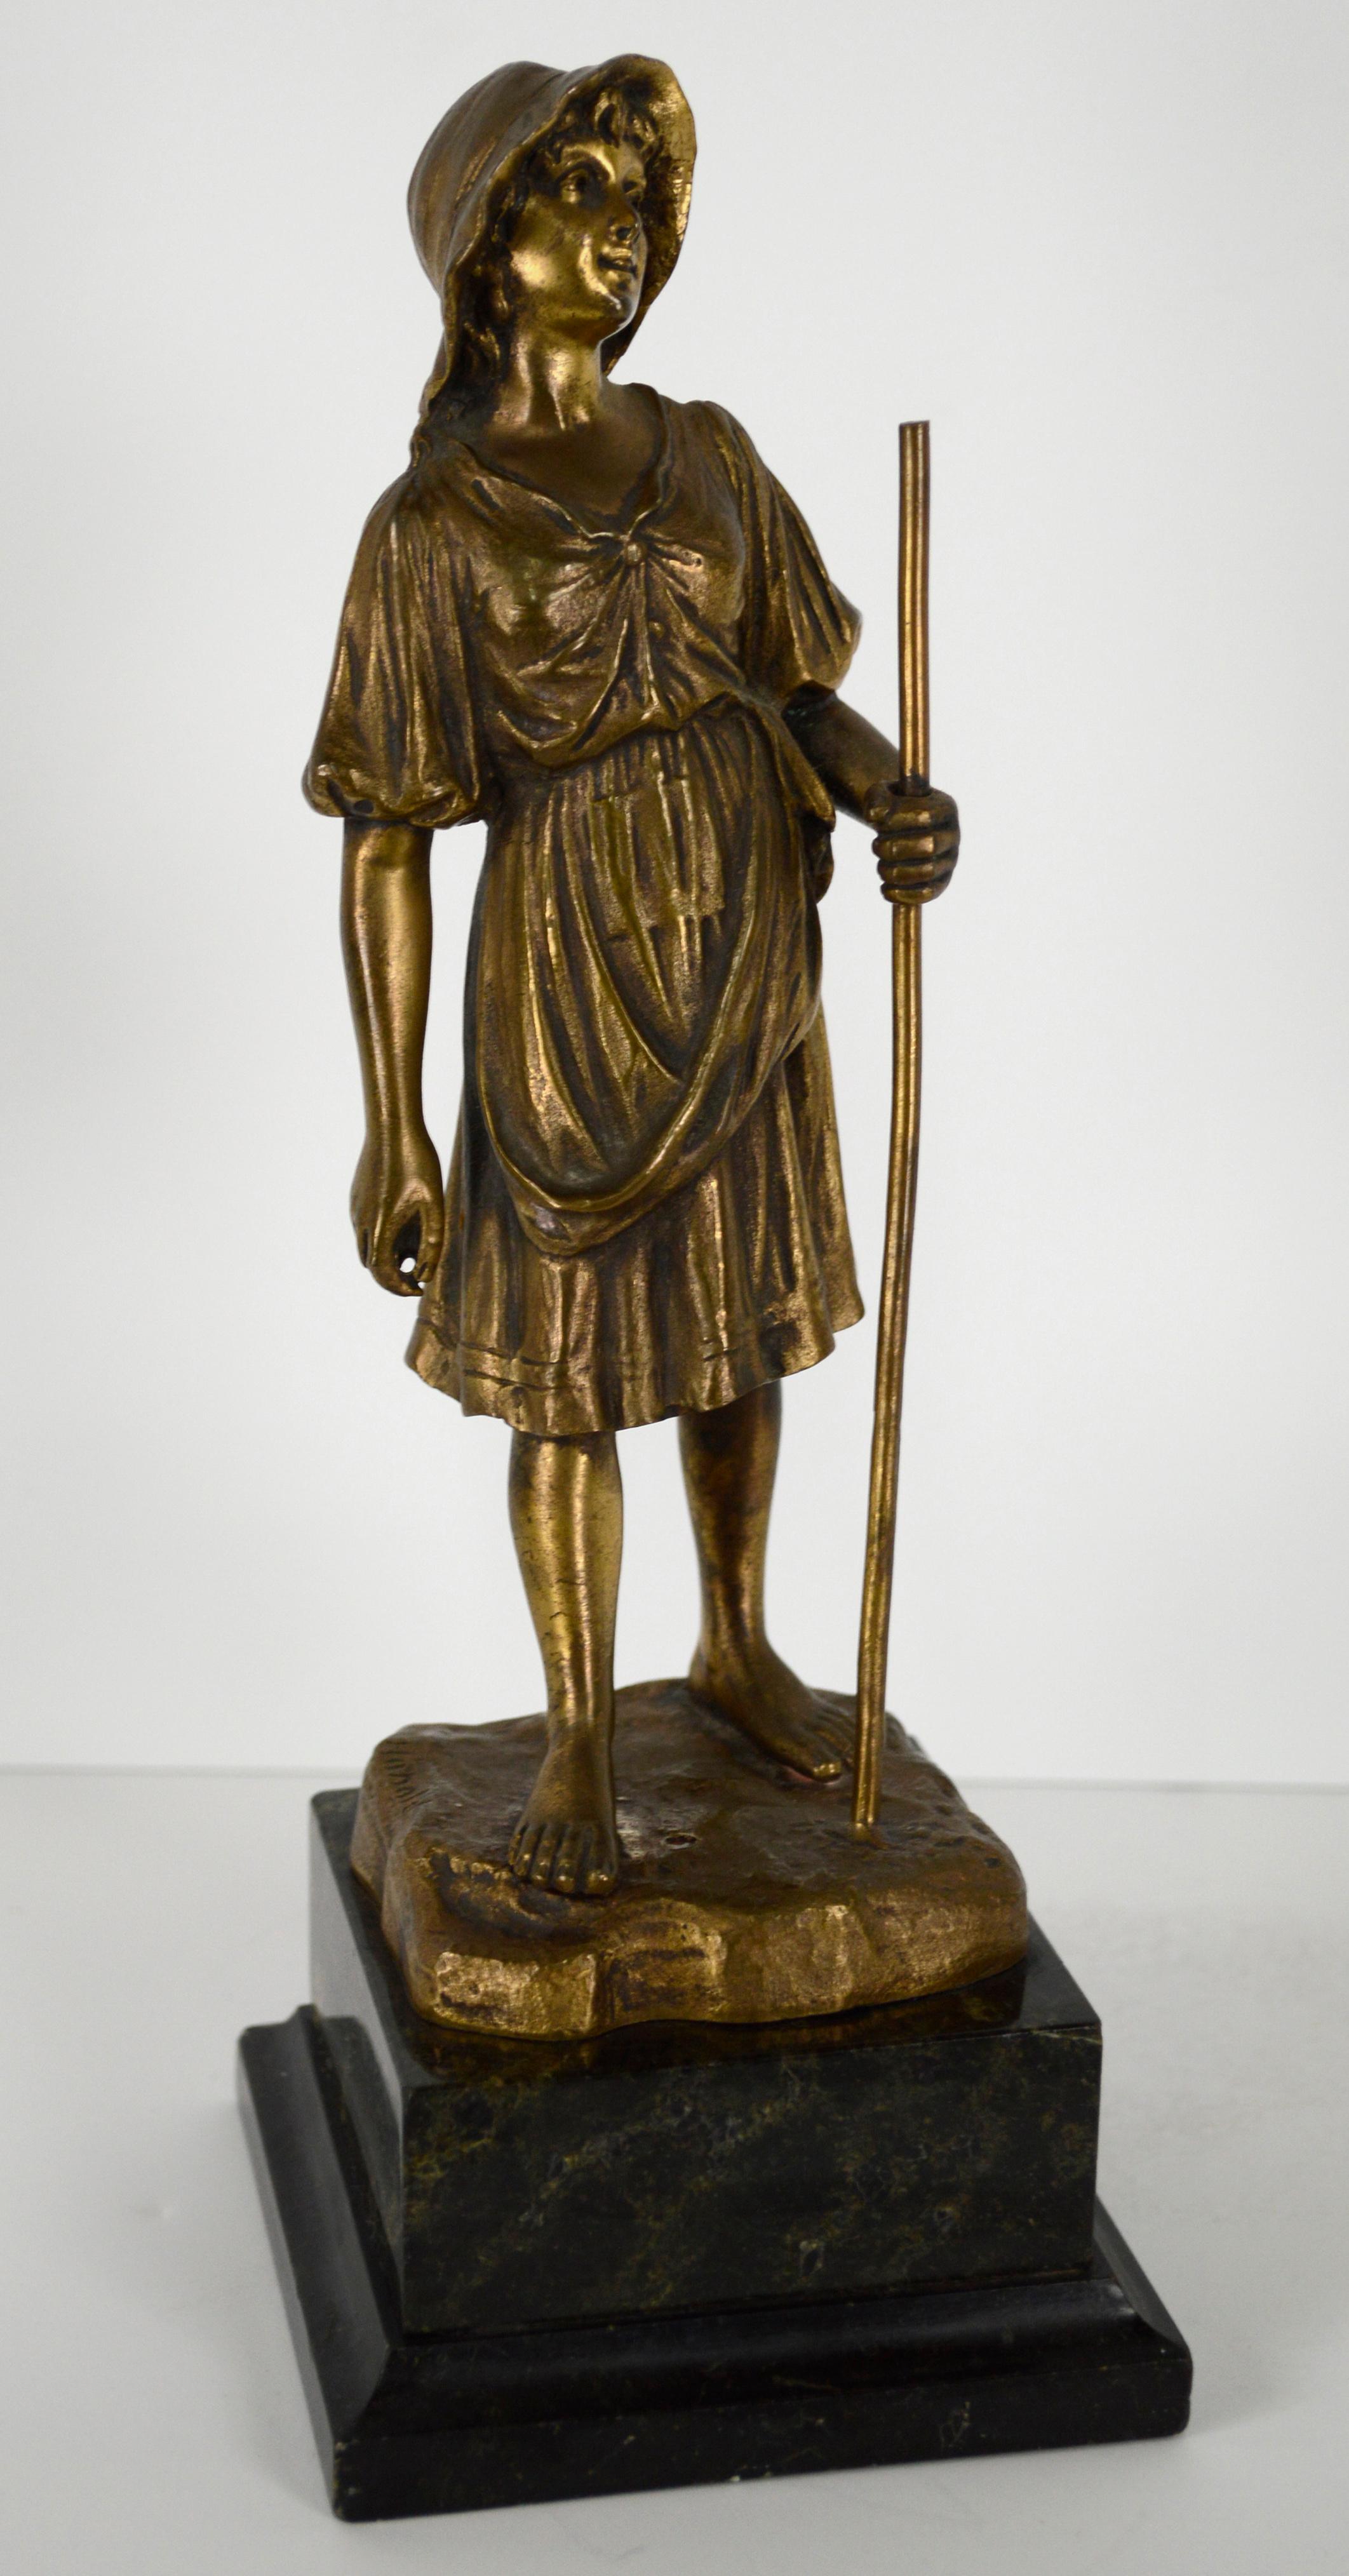 Bronze-Figurenskulptur des frühen 20. Jahrhunderts, Hirtenmädchen mit Stachelstatue – Sculpture von R. Hobold